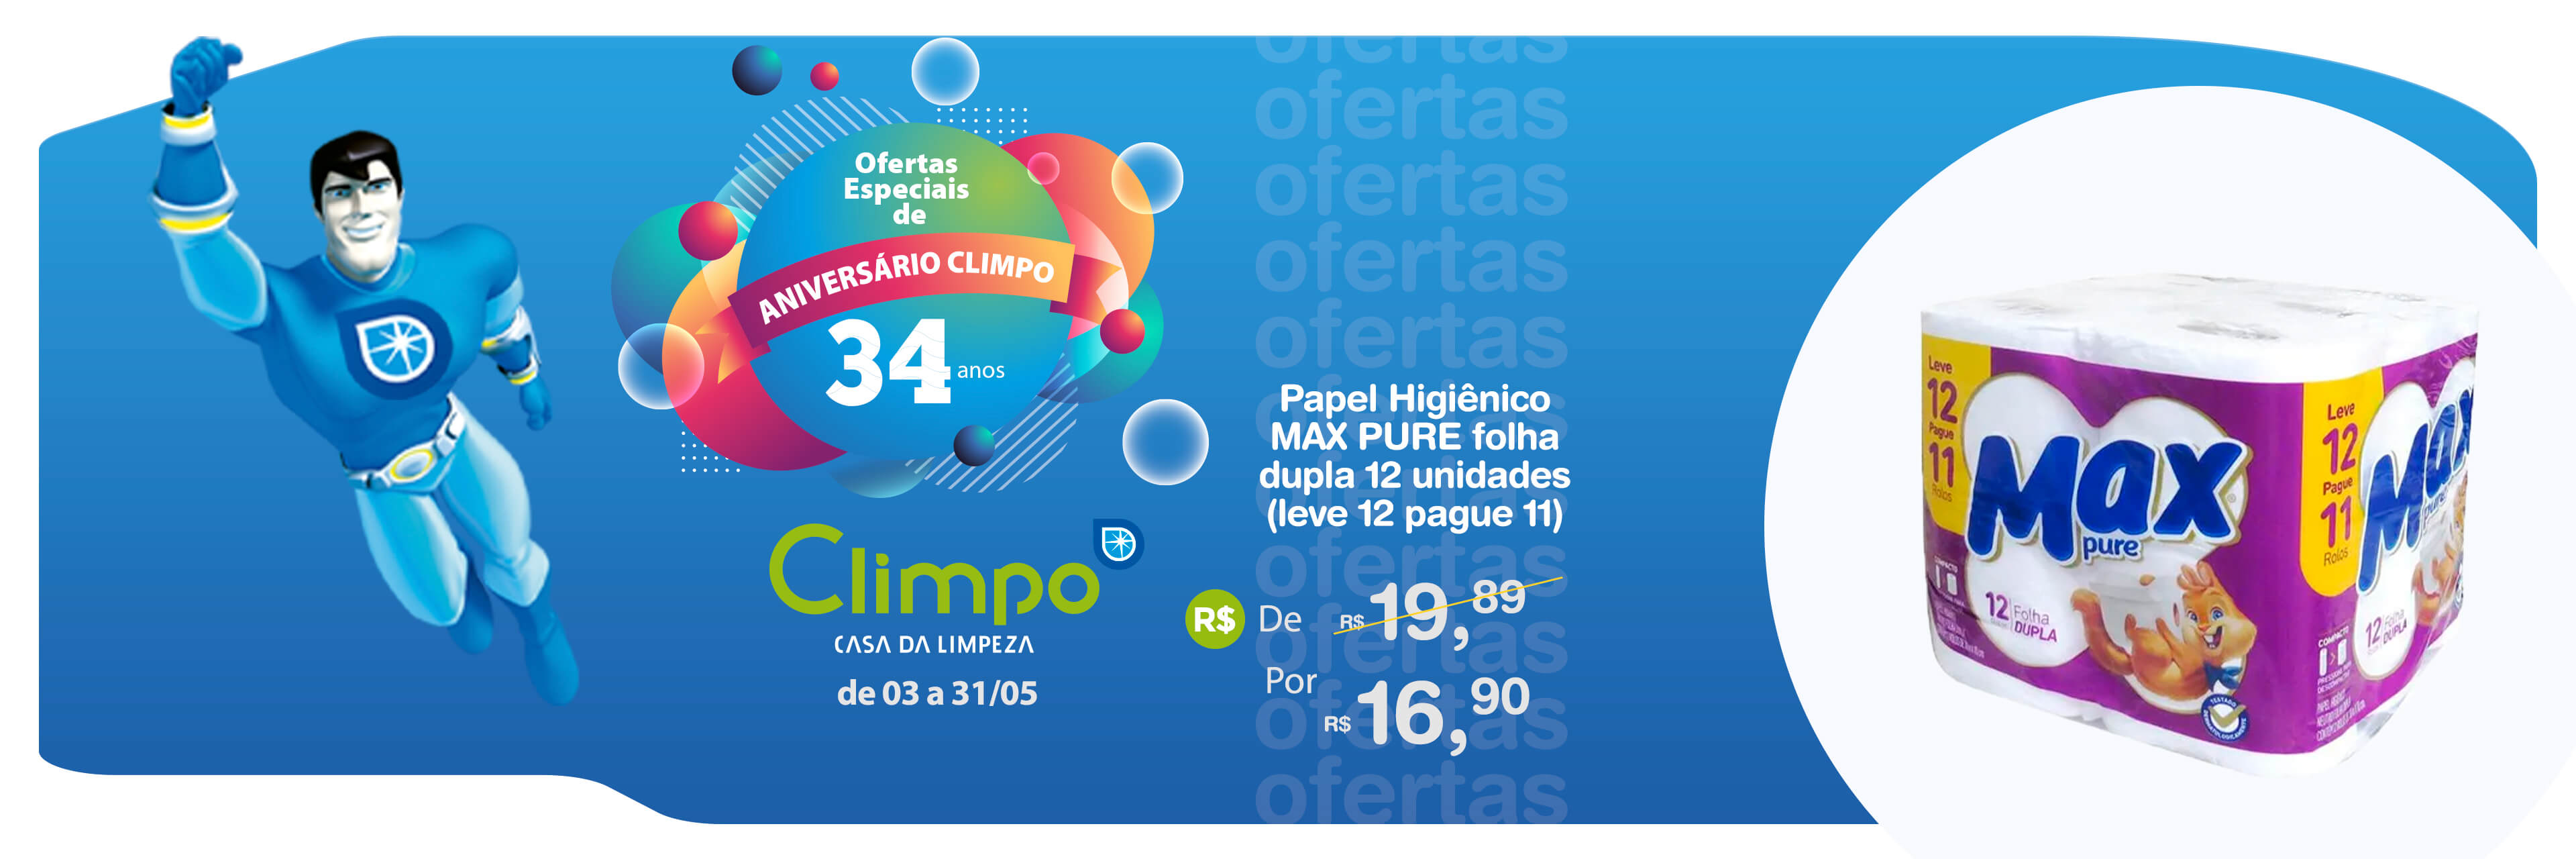 Banner Ofertas de Aniversário Climpo Papel higiênico max pure 01